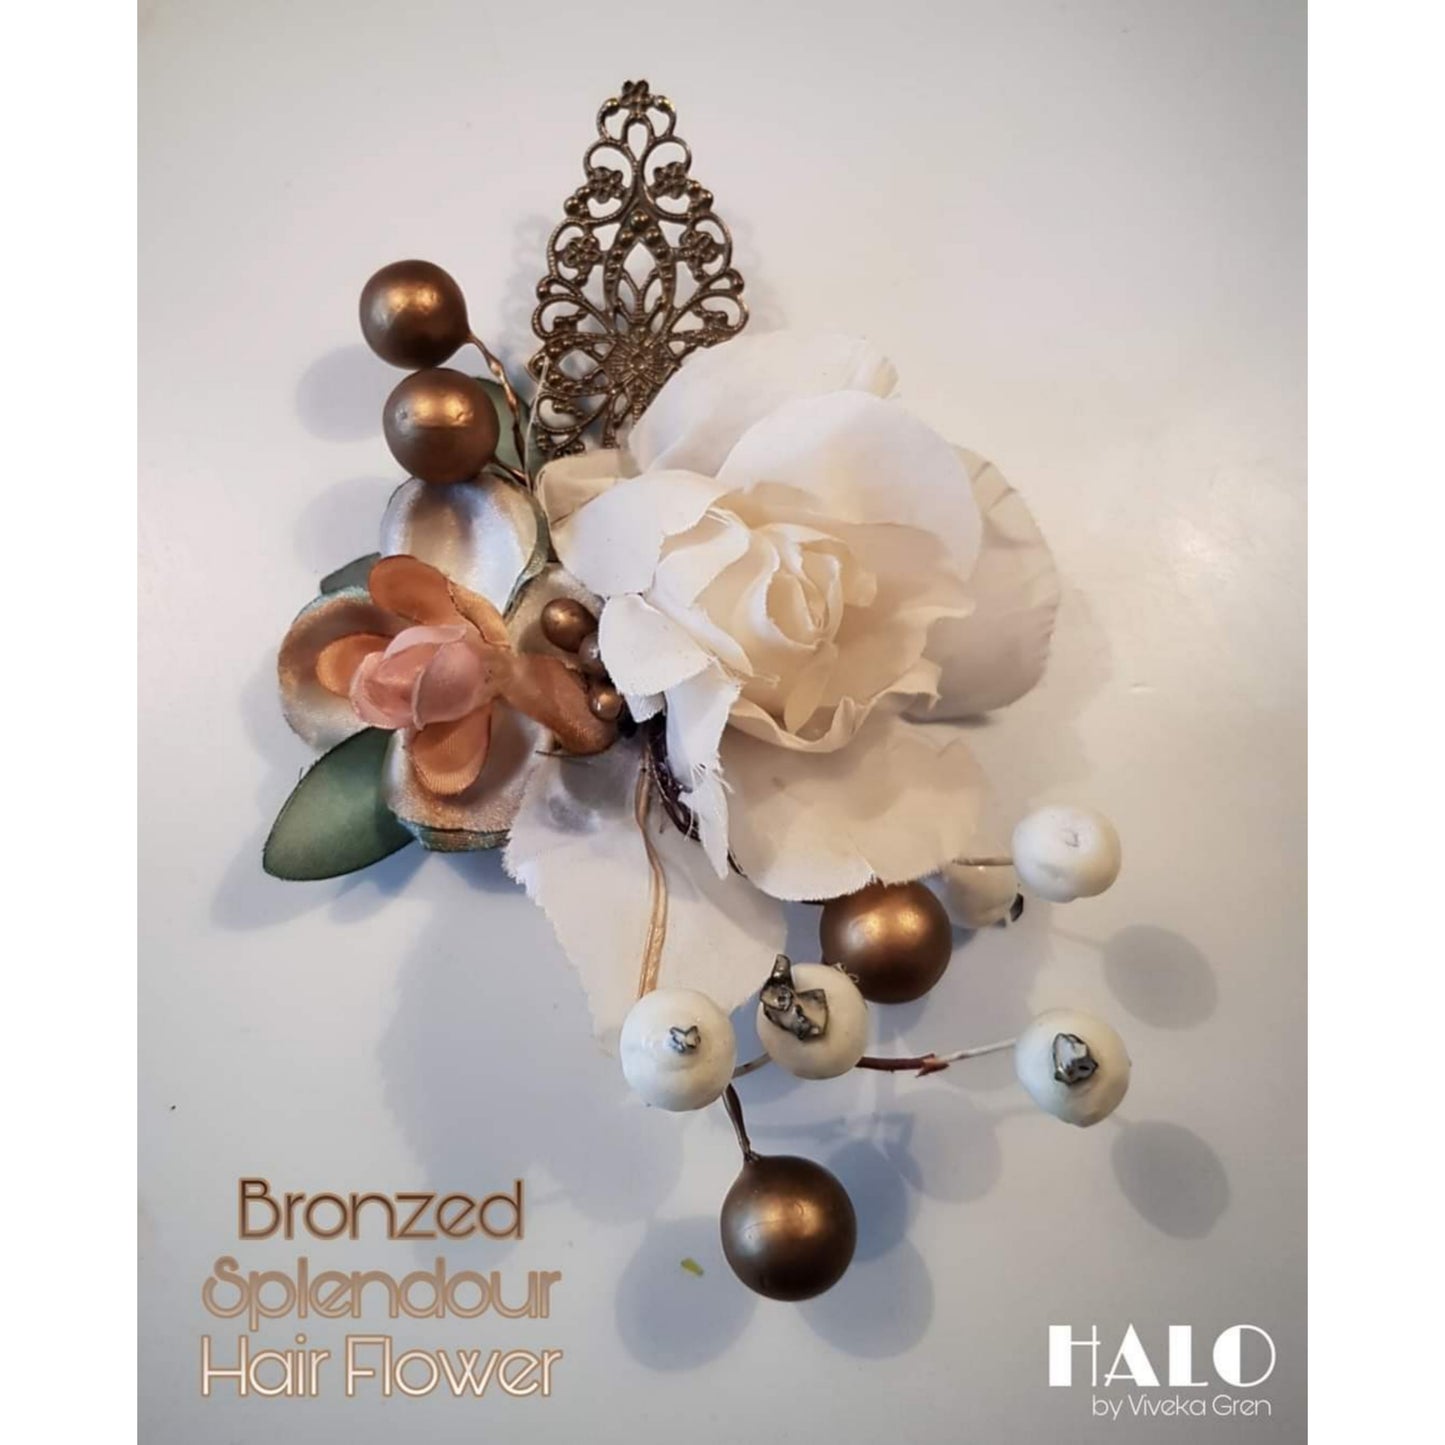 The Bronzed Splendour Bridal Hair Flower